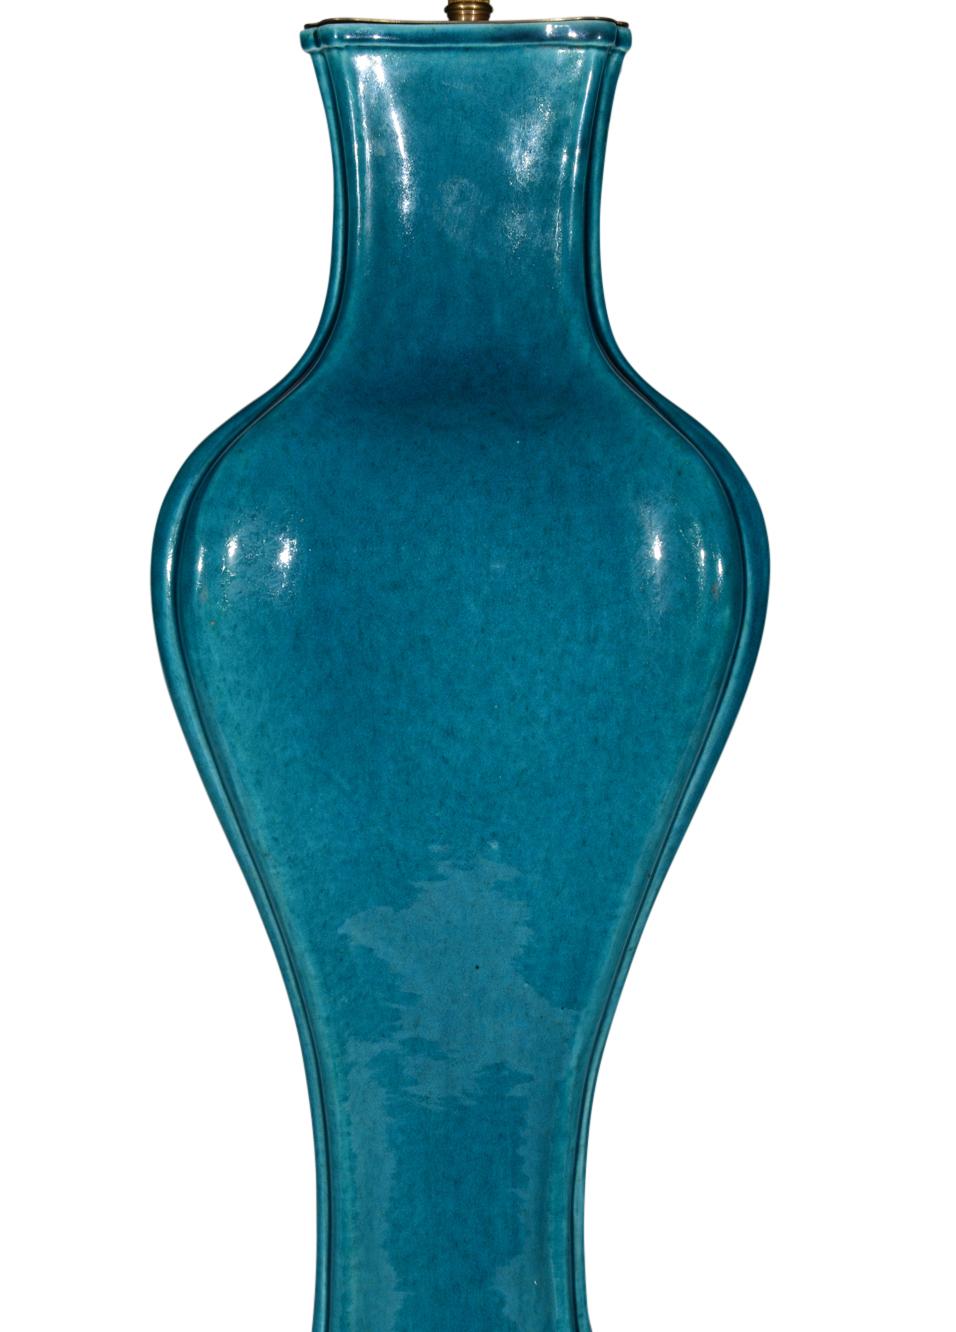 Eine sehr schöne und ungewöhnlich elegant geformte chinesische Balustervase aus dem späten 19. und frühen 20. Jahrhundert mit tief türkisfarbener Glasur und einer seltenen, sich verjüngenden, rechteckigen, getäfelten Form. Jetzt als Lampe mit einem